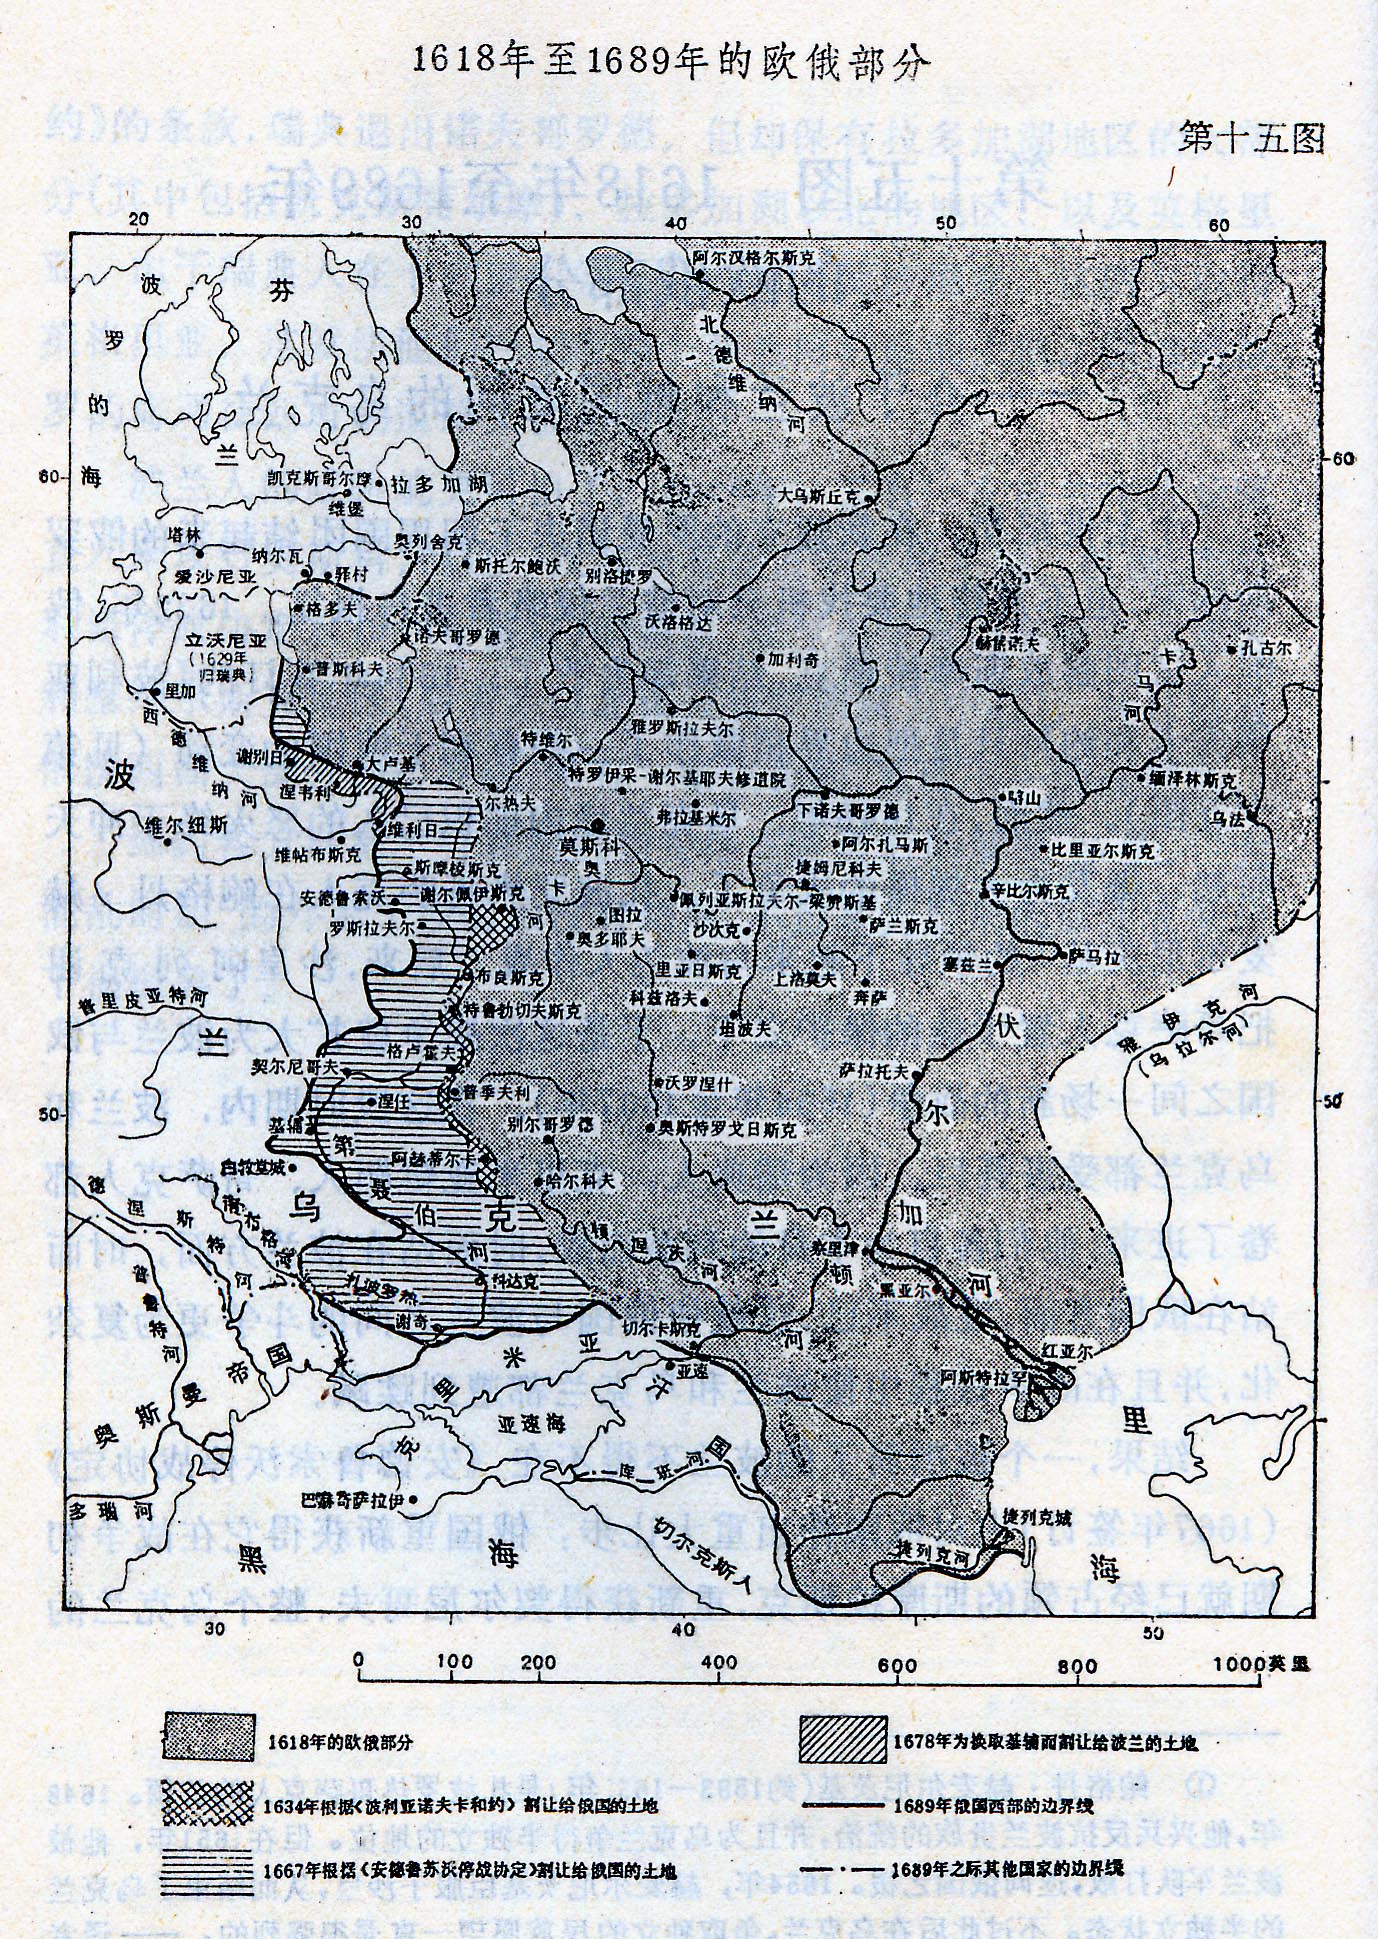 《俄国历史地图解说》-1100年俄国疆界的变动(转载)